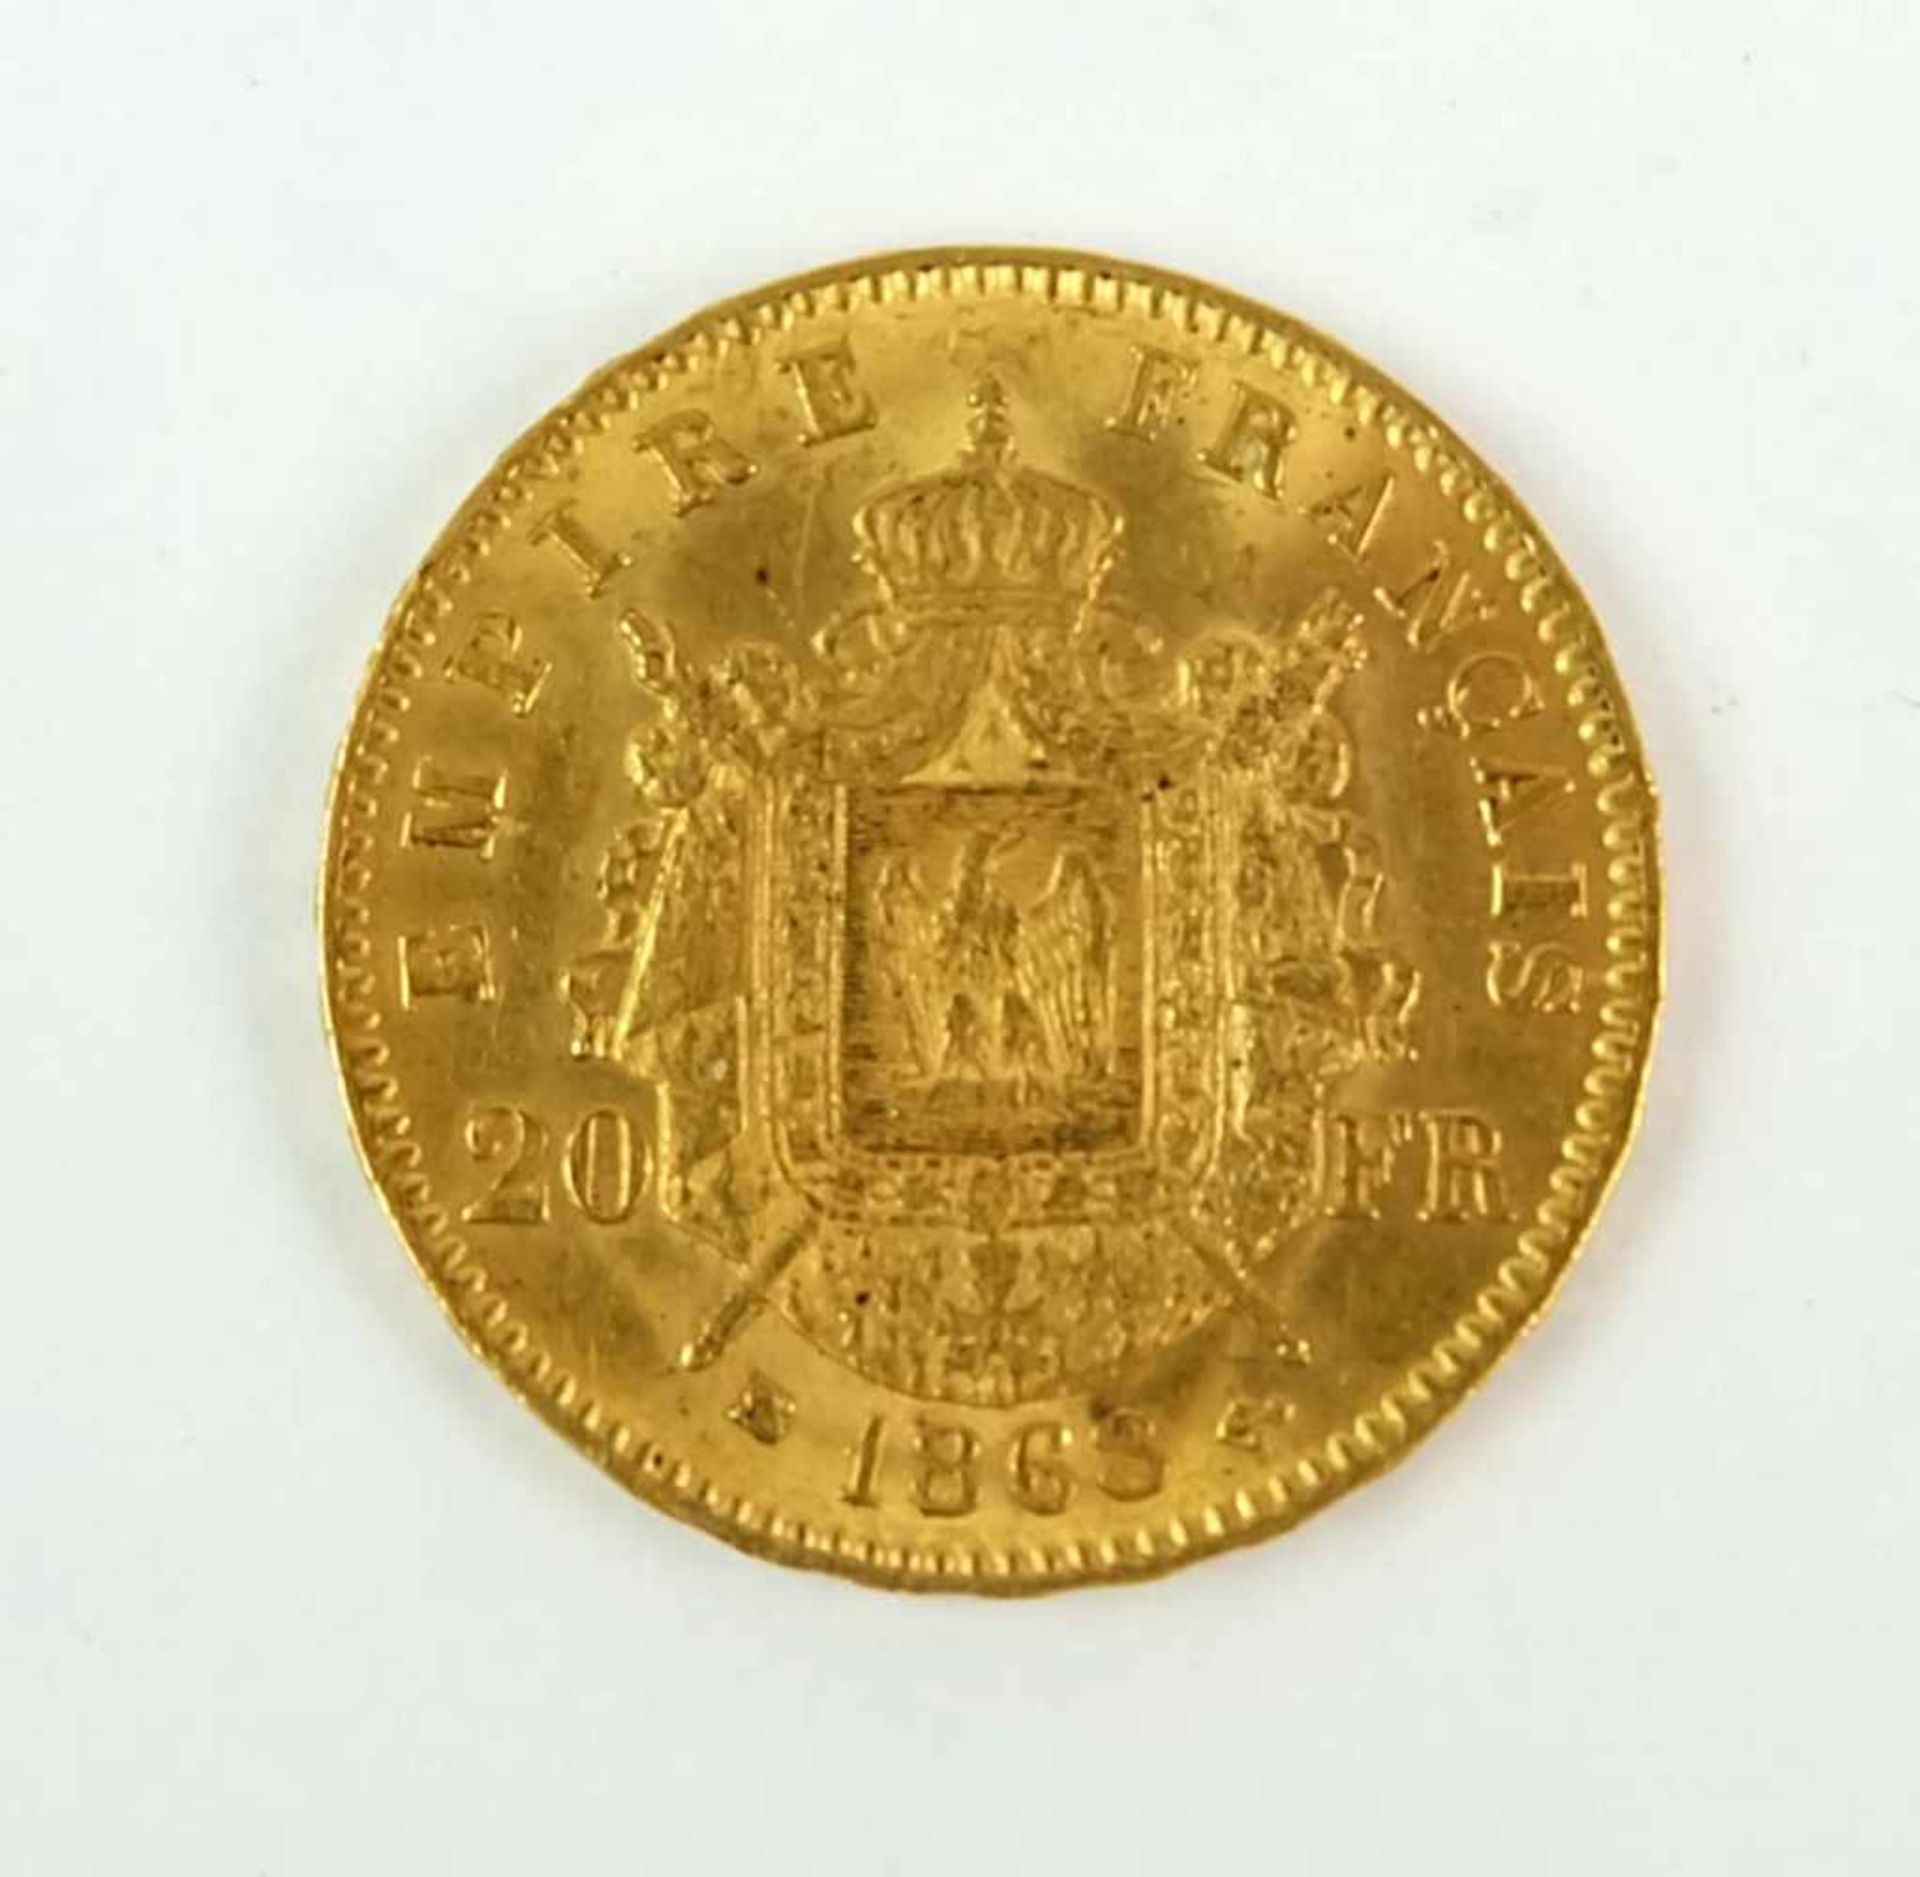 Frankreich, Napoleon III., 20 Francs, 1868, ca. 6,45g 900er-Gold - Image 3 of 3